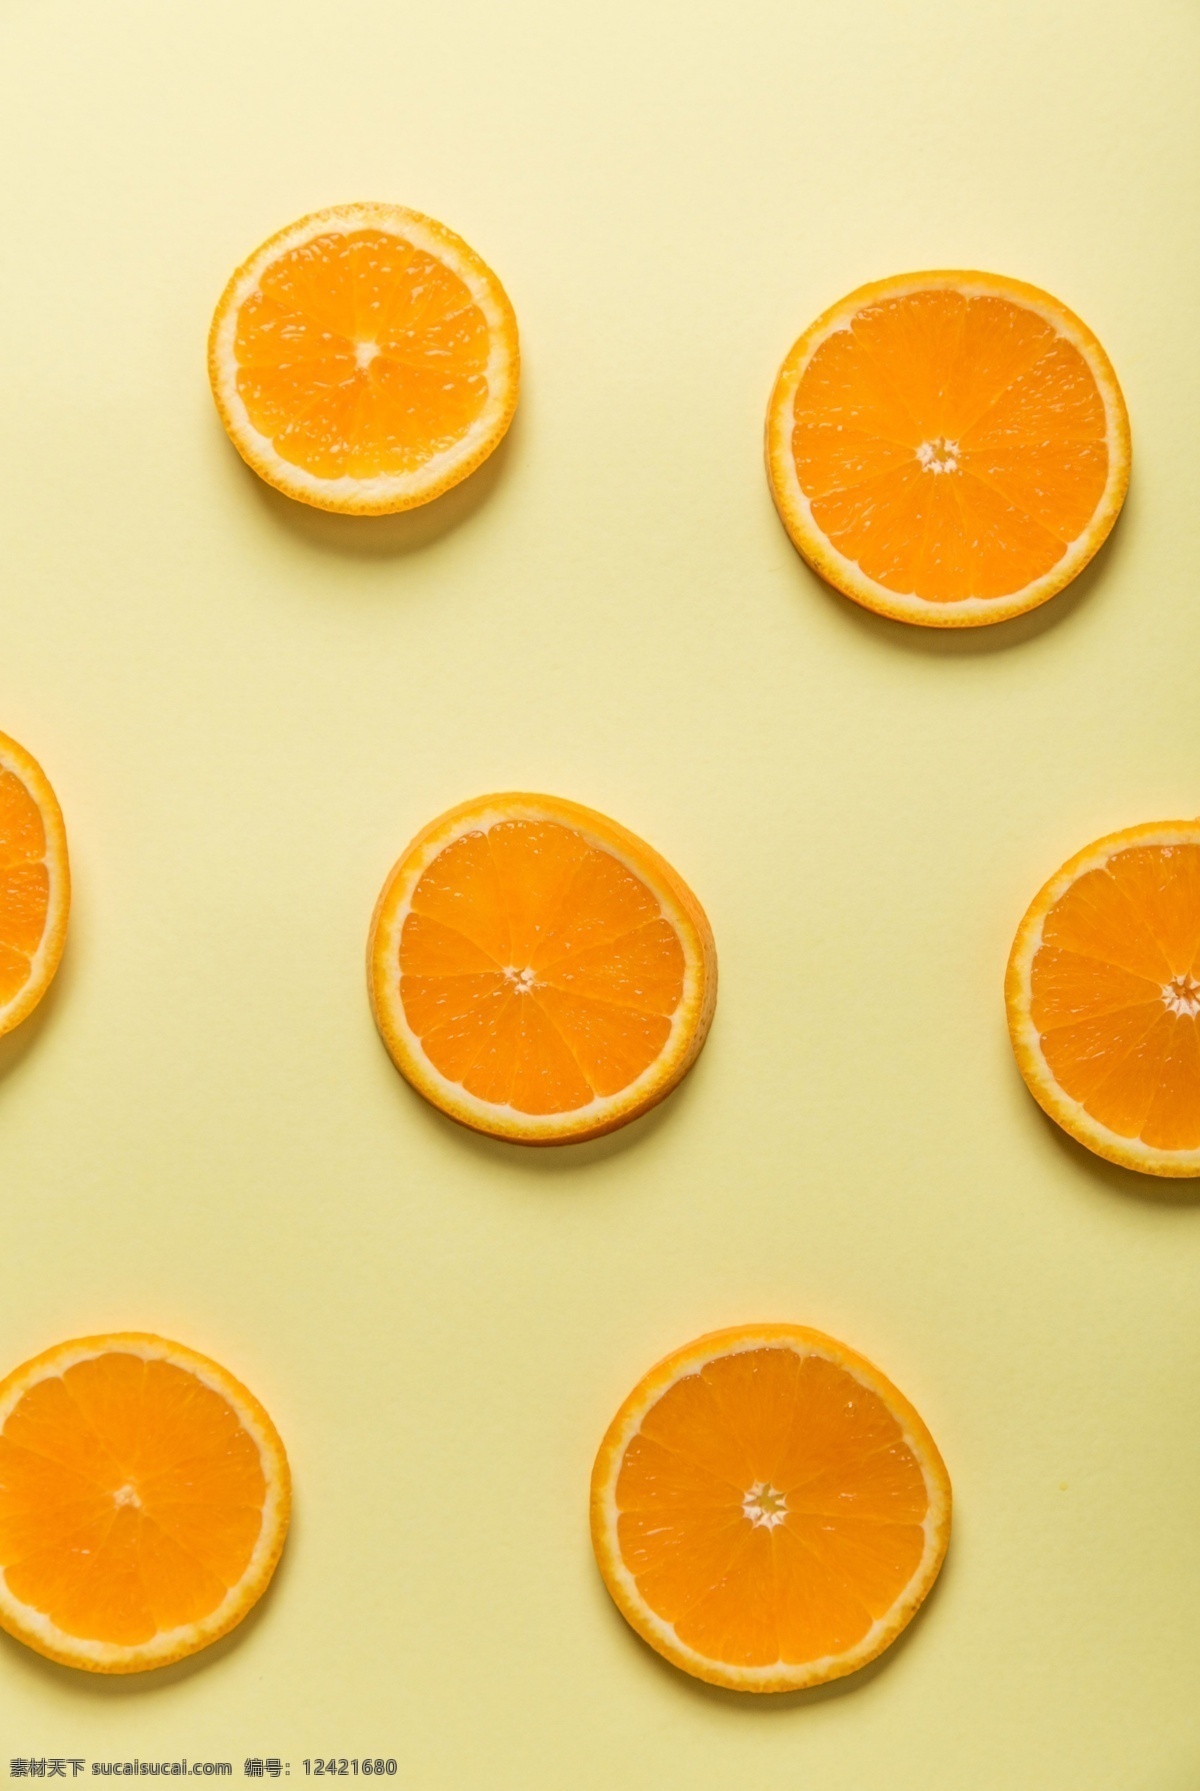 橙子背景 橙子 橙子片 平铺的橙子片 黄色背景 水果 食物 食品 新鲜 水果背景 饮食 健康 绿色食品 生物世界 高清 tiff 桌面 高清壁纸 壁纸 拍摄 摆拍 高清摄影 水果摄影 美食摄影